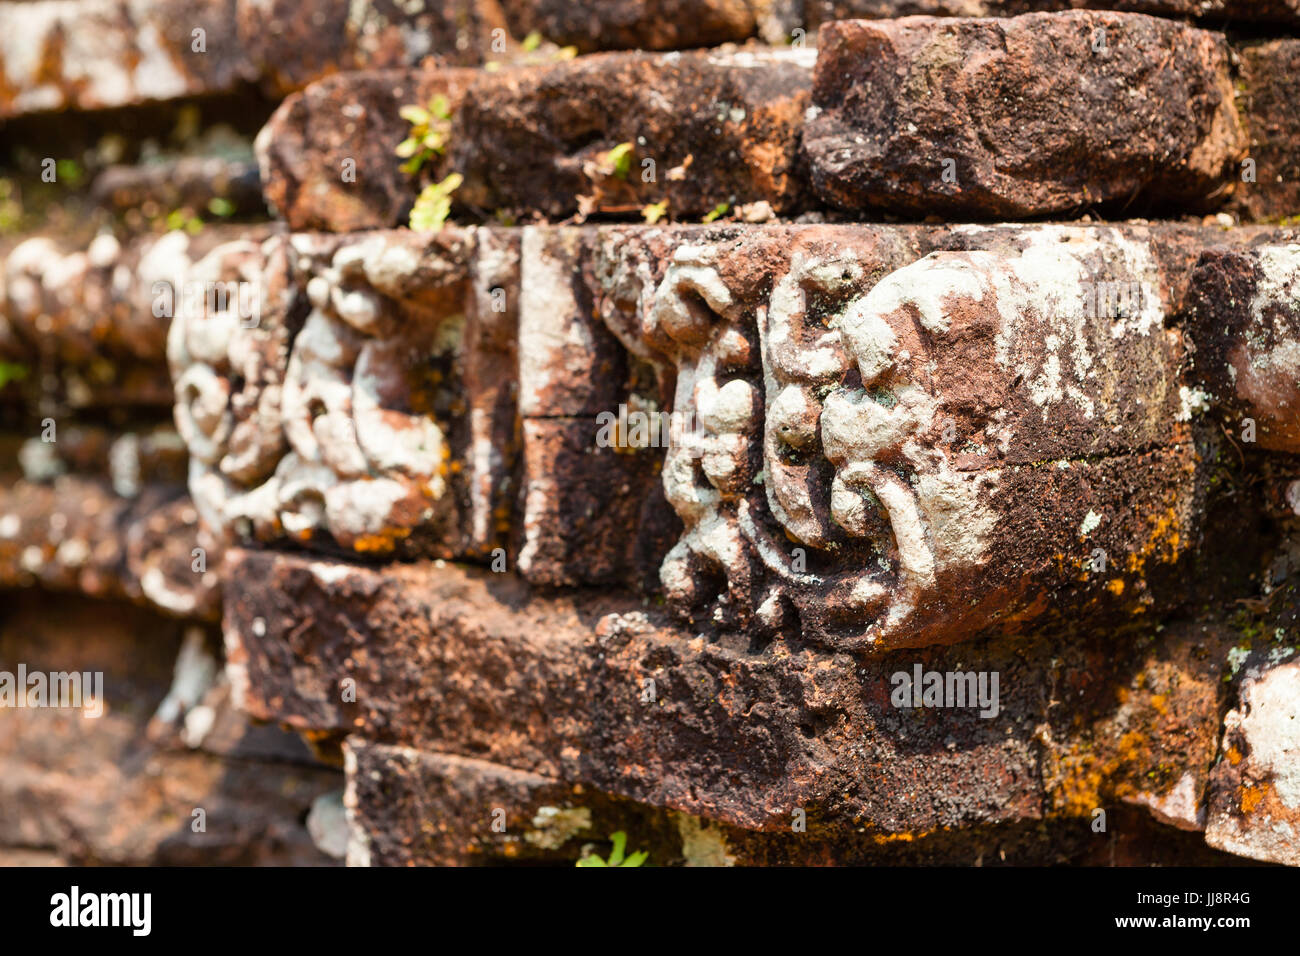 Duy Phu, mon fils temple, Vietnam - Mars 14, 2017 : ruines de temples hindous au milieu de la jungle, site du patrimoine mondial de l'UNESCO Banque D'Images